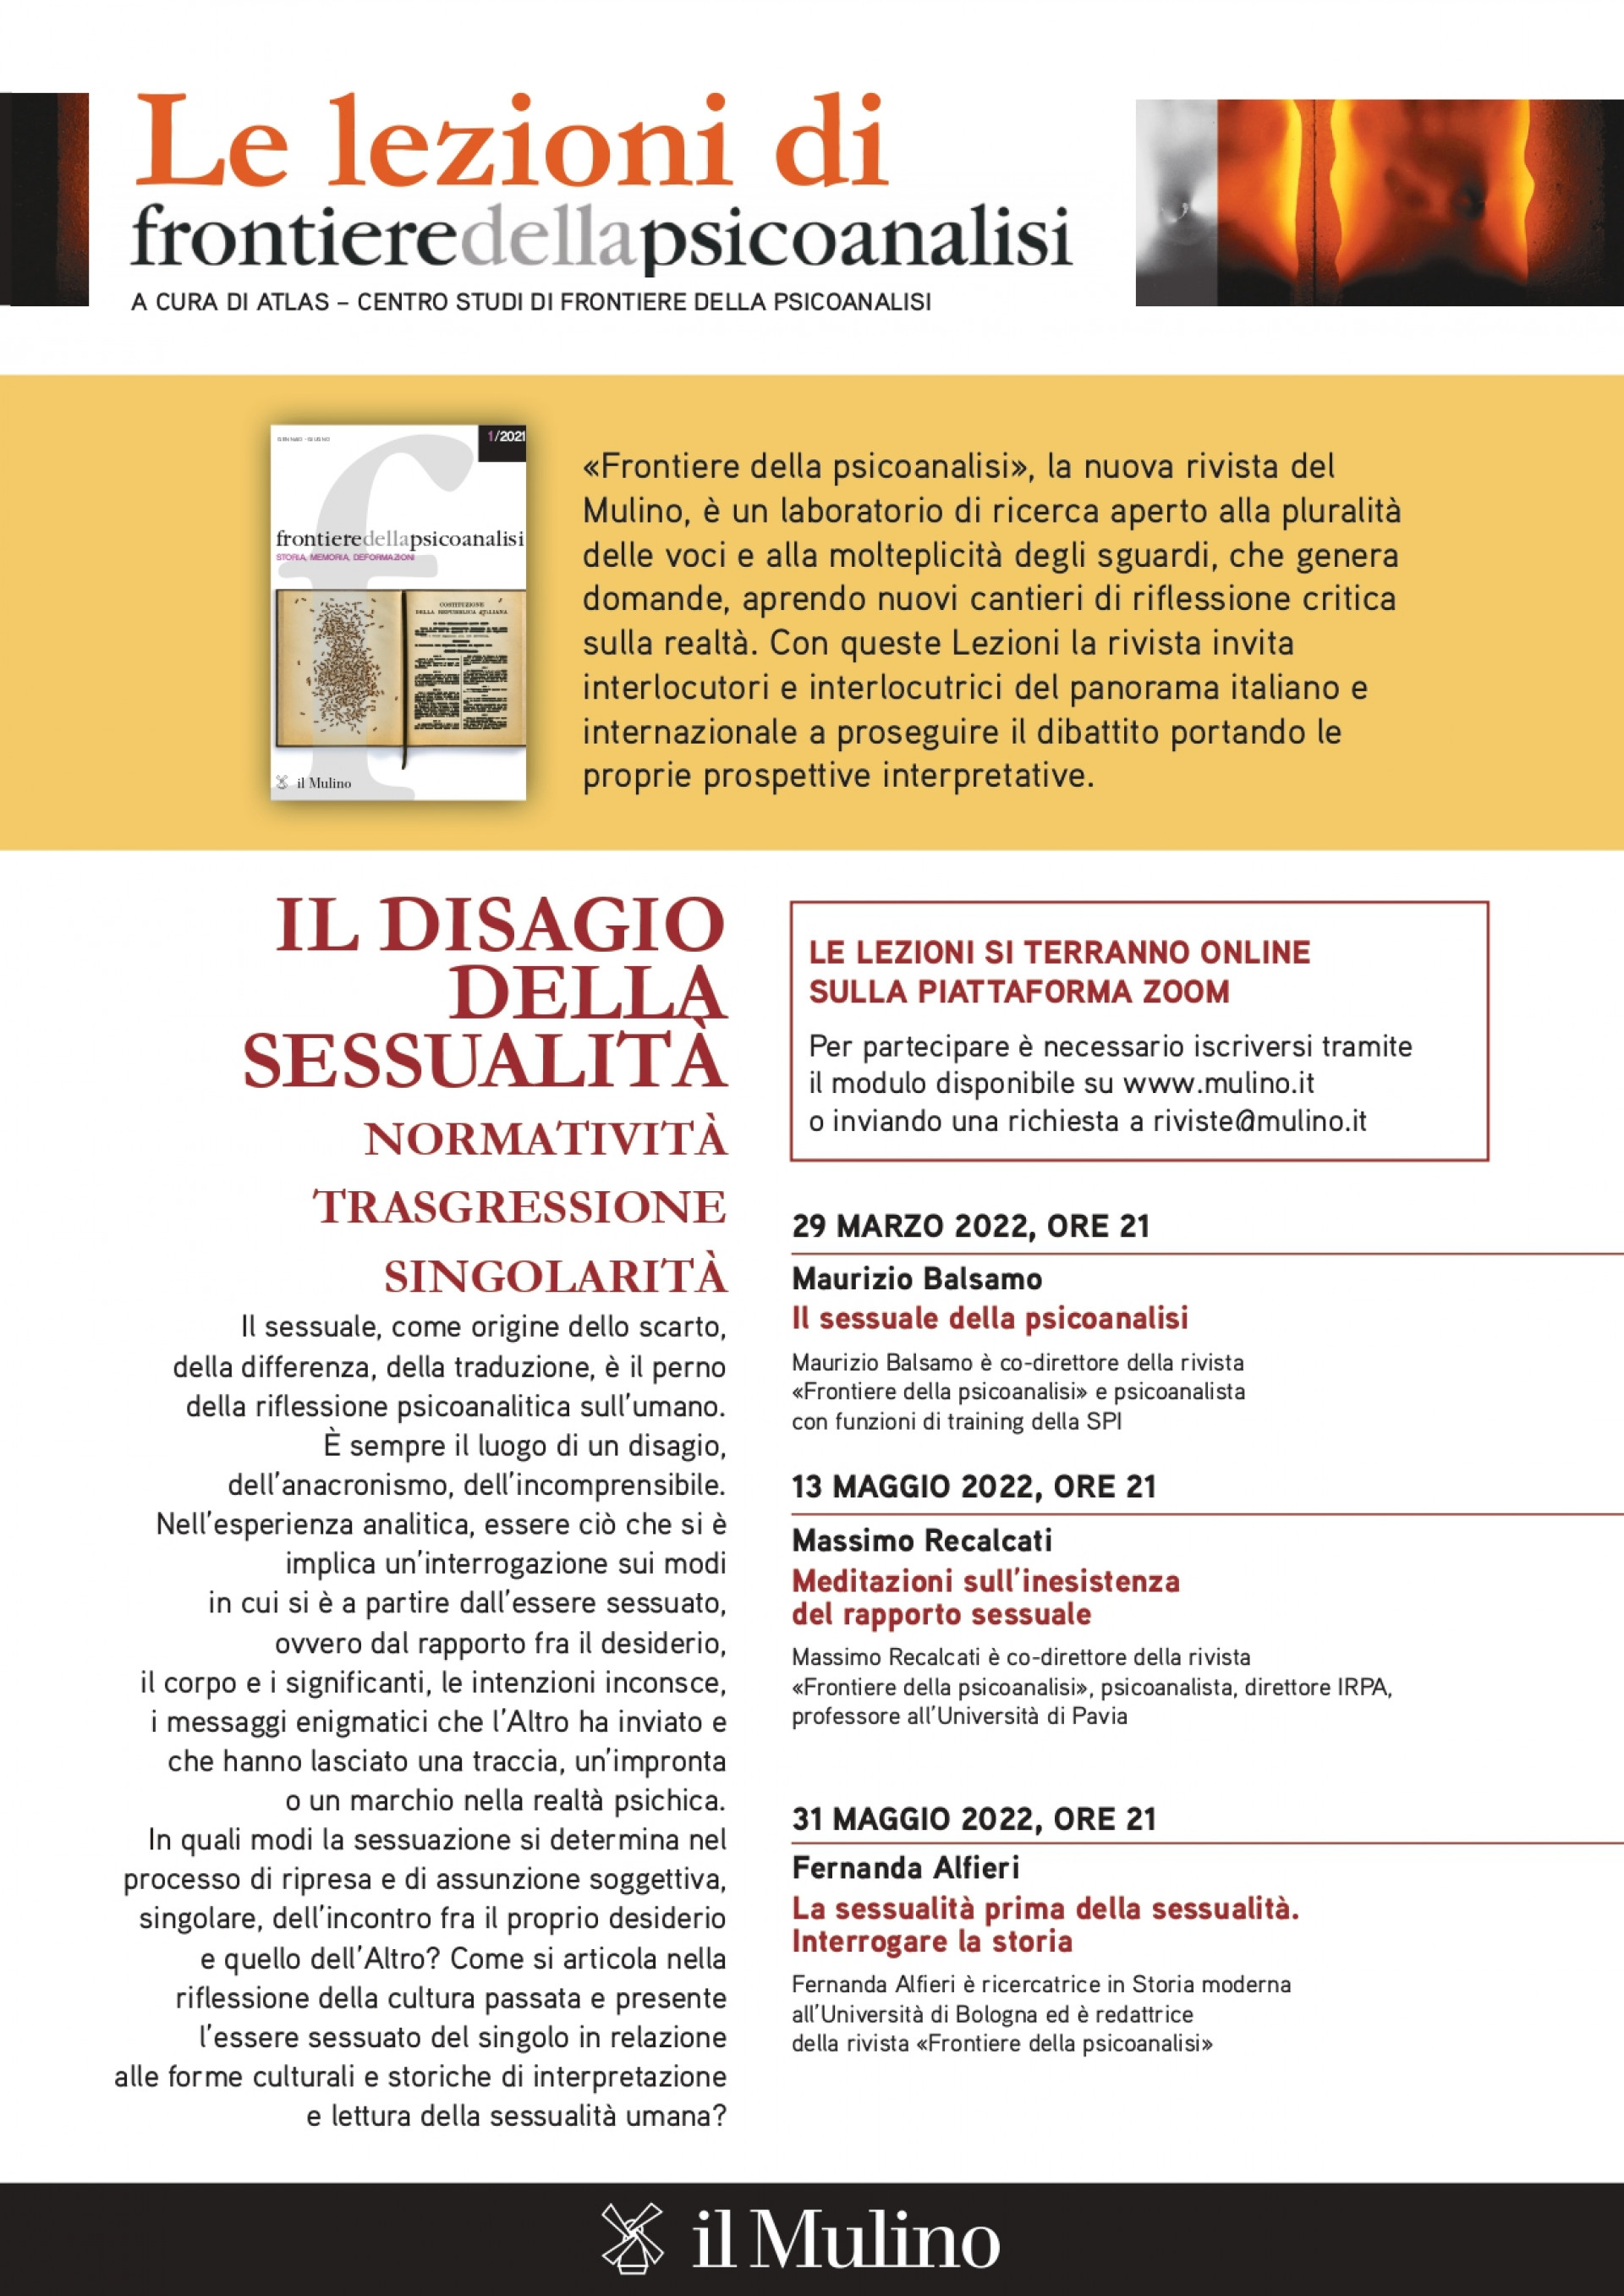 "Meditazioni sull'inesistenza del rapporto sessuale" con Massimo Recalcati  - 13 MAGGIO 2022, ORE 21